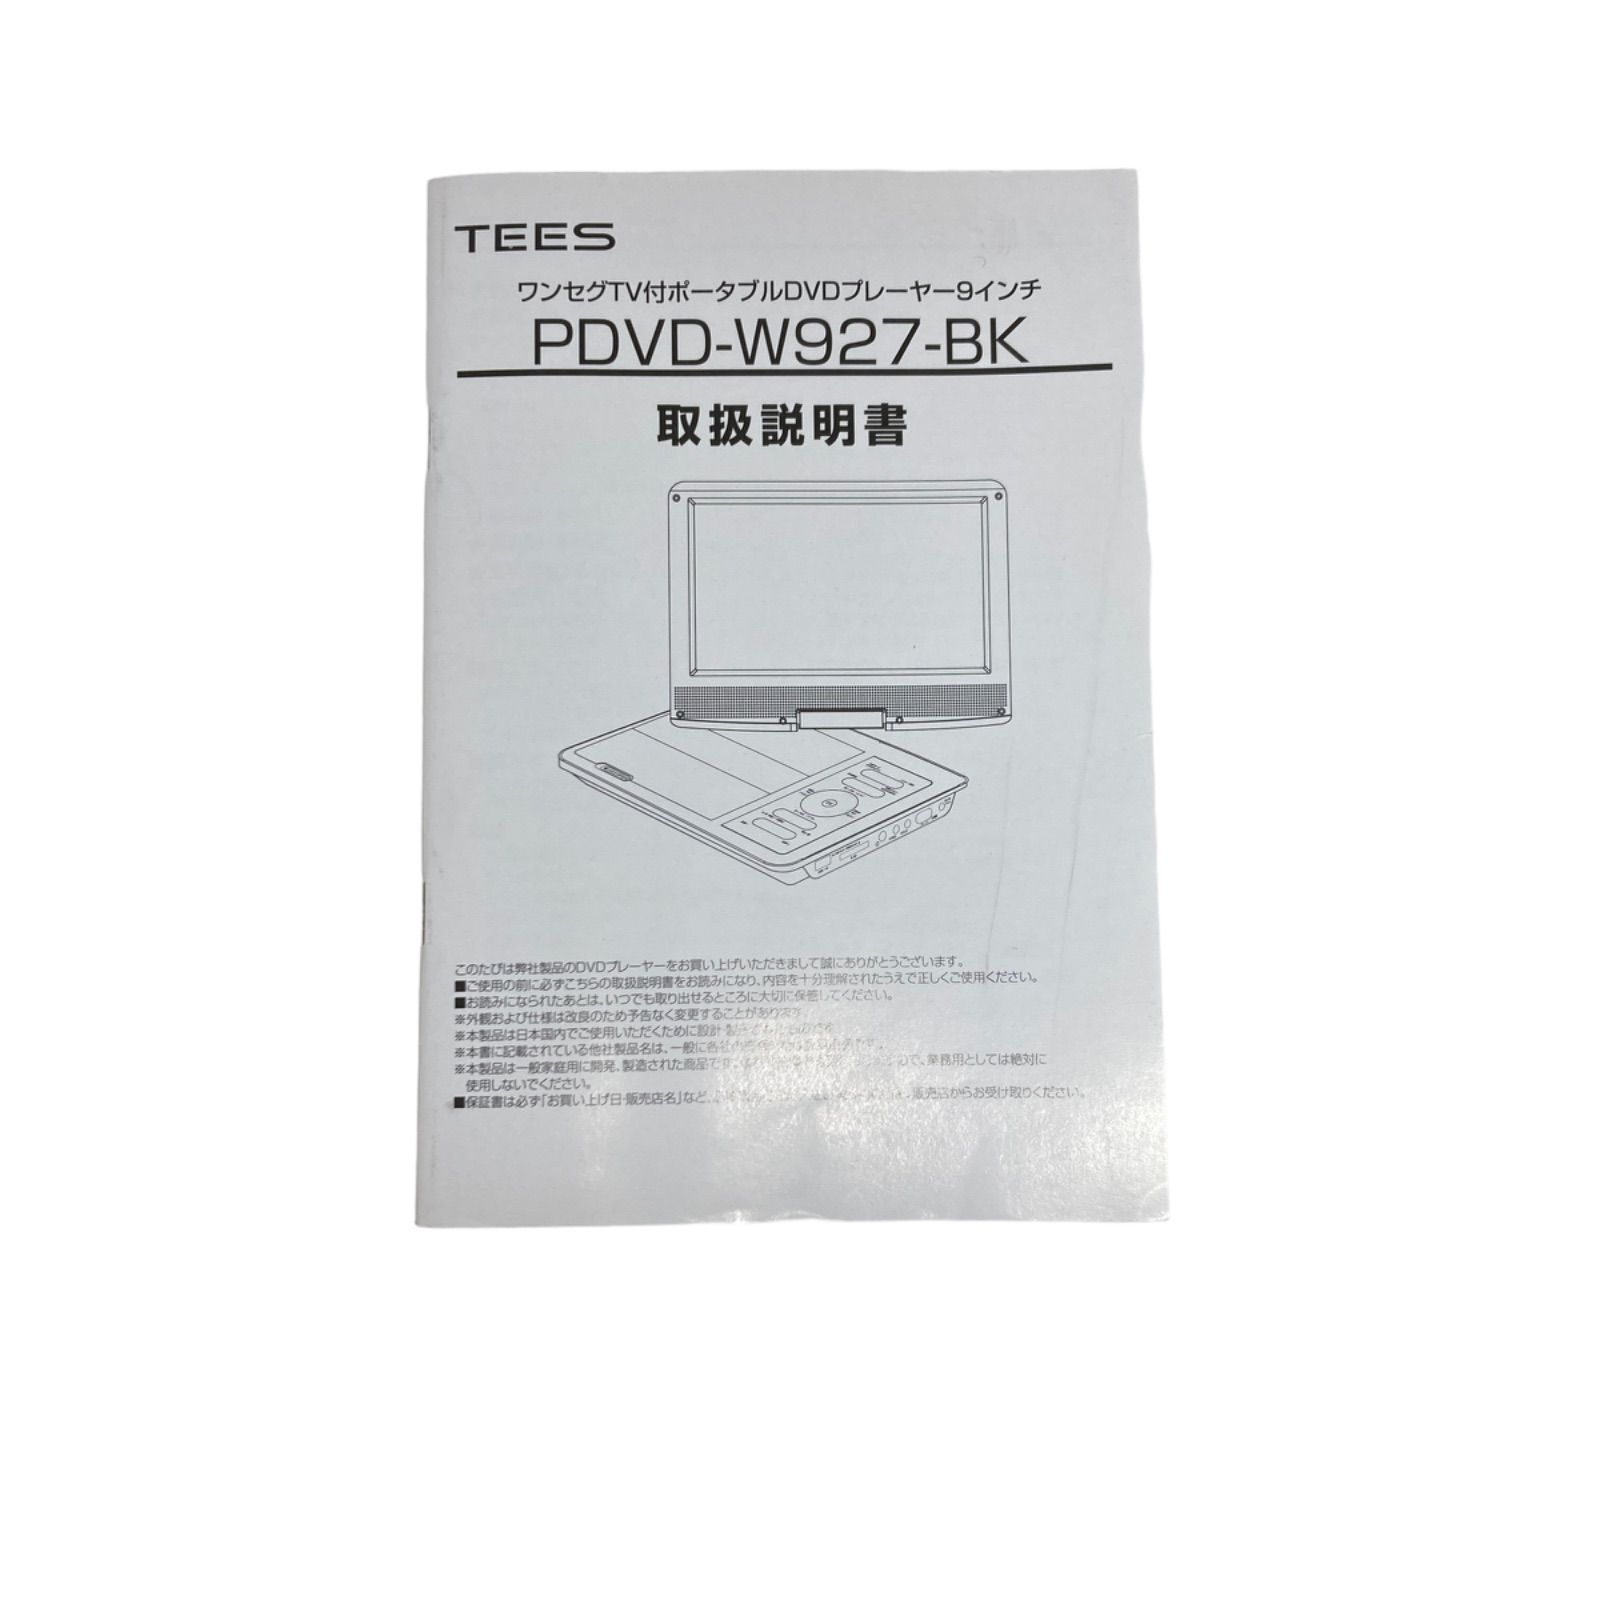 ワンセグTV付きポータブルDVDプレイヤー9インチ 型番PDVD-W927